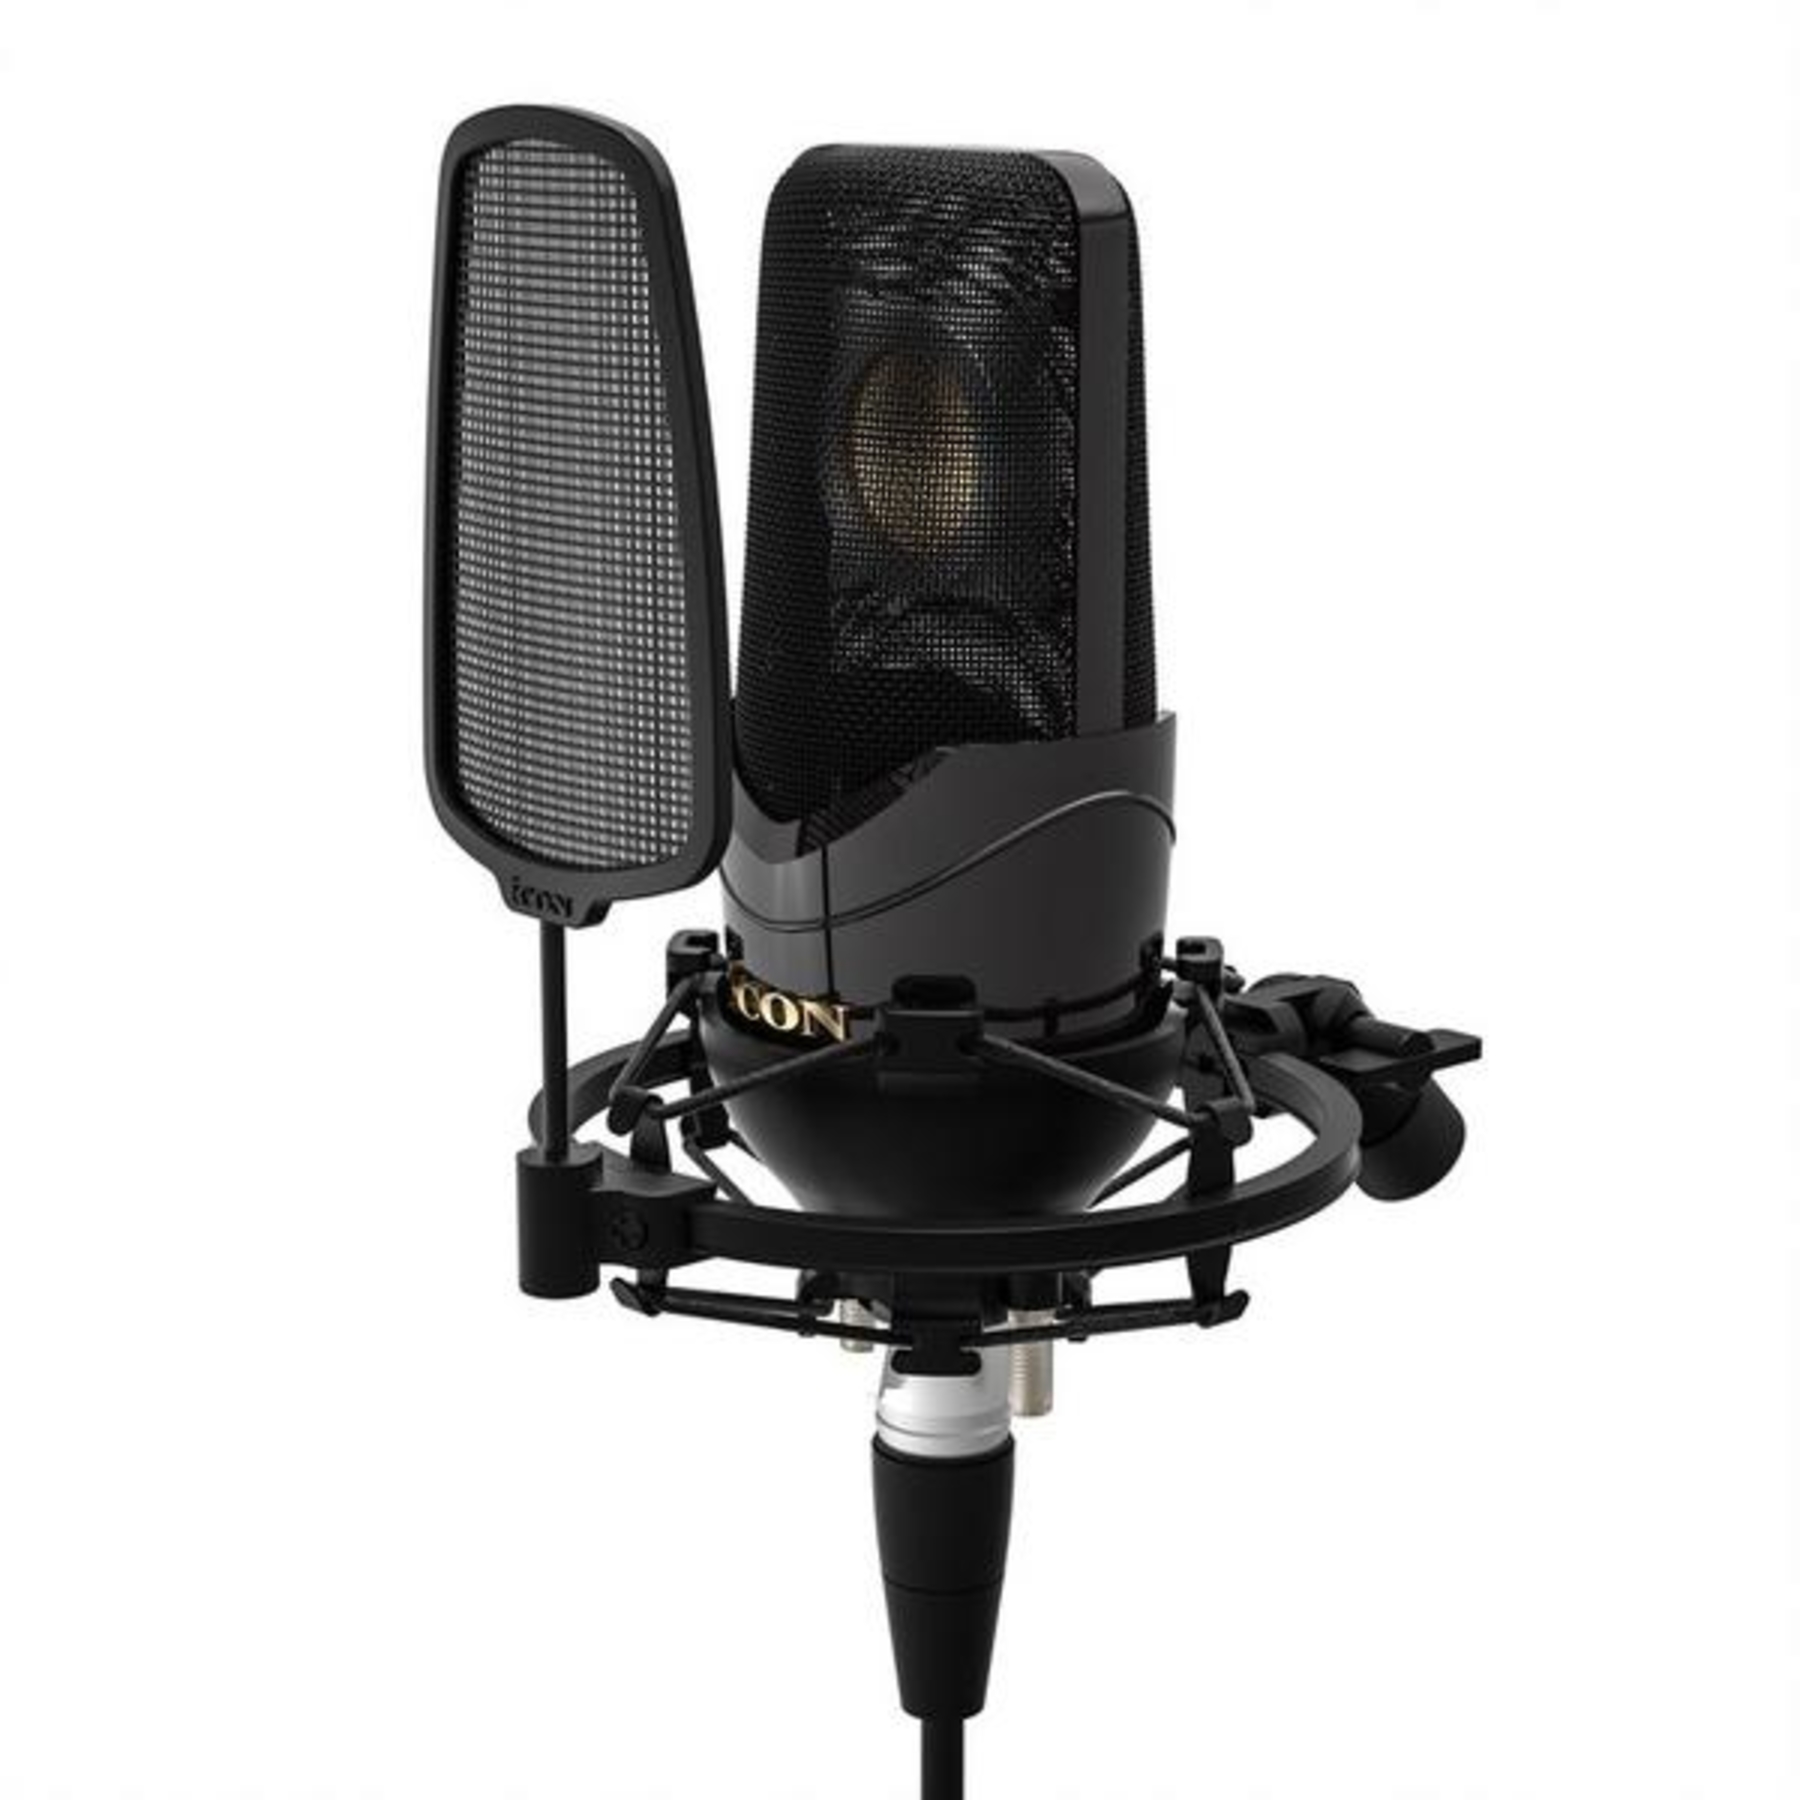 студийные микрофоны icon c1 pro Студийные микрофоны iCON Nova 3